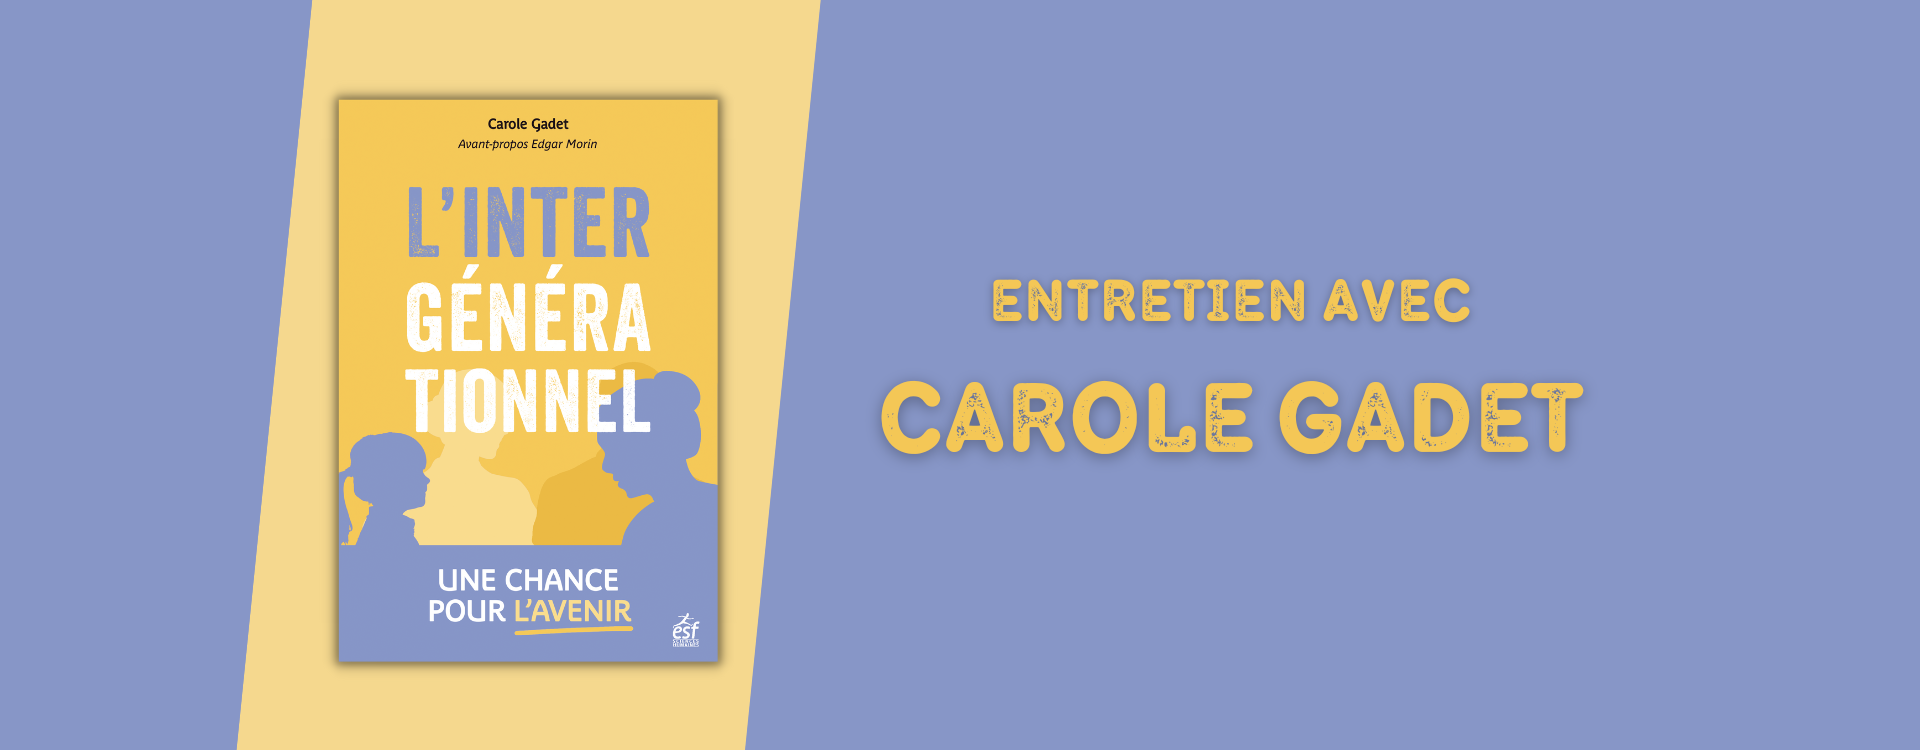 L'intergénérationnel, une chance pour l'avenir : entretien avec Carole Gadet